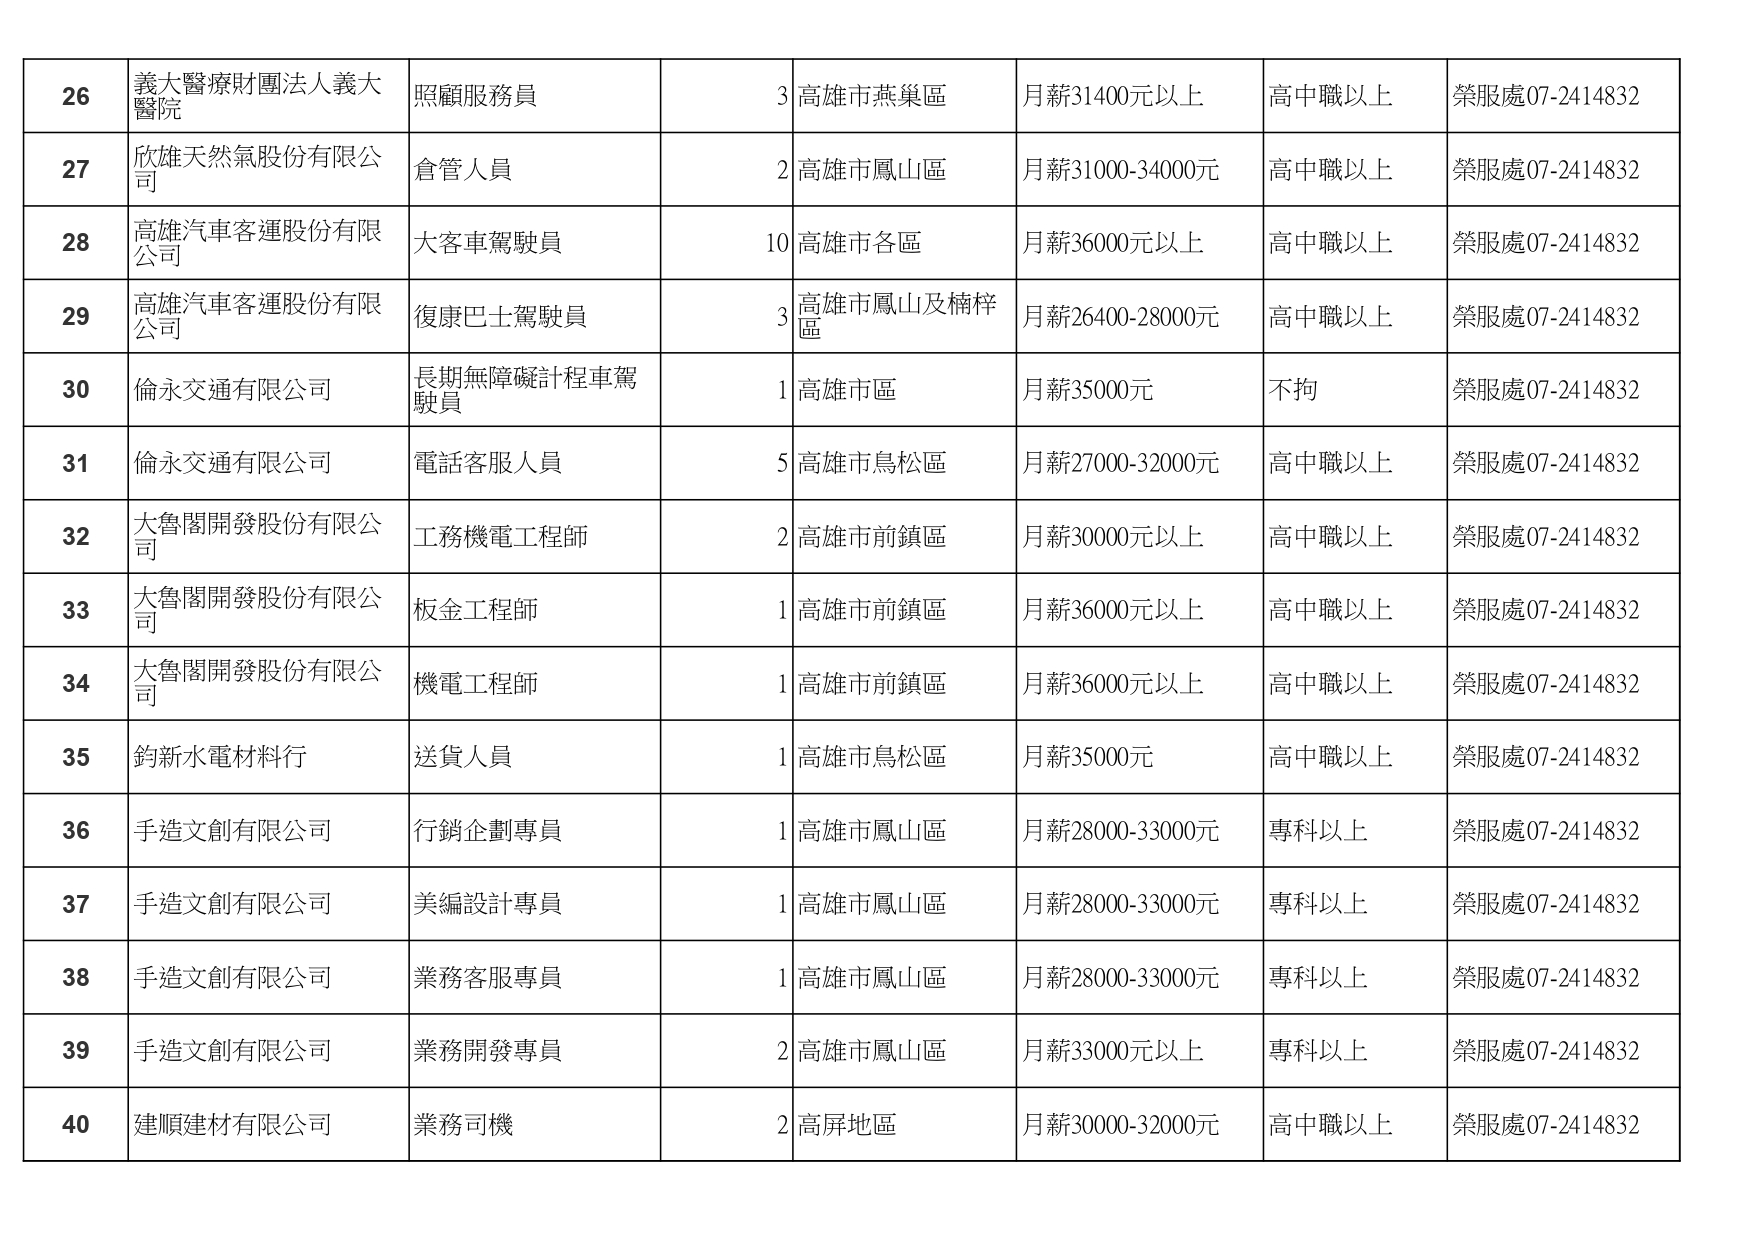 高雄榮服處-廠商職缺列表112.10.3_page-0003